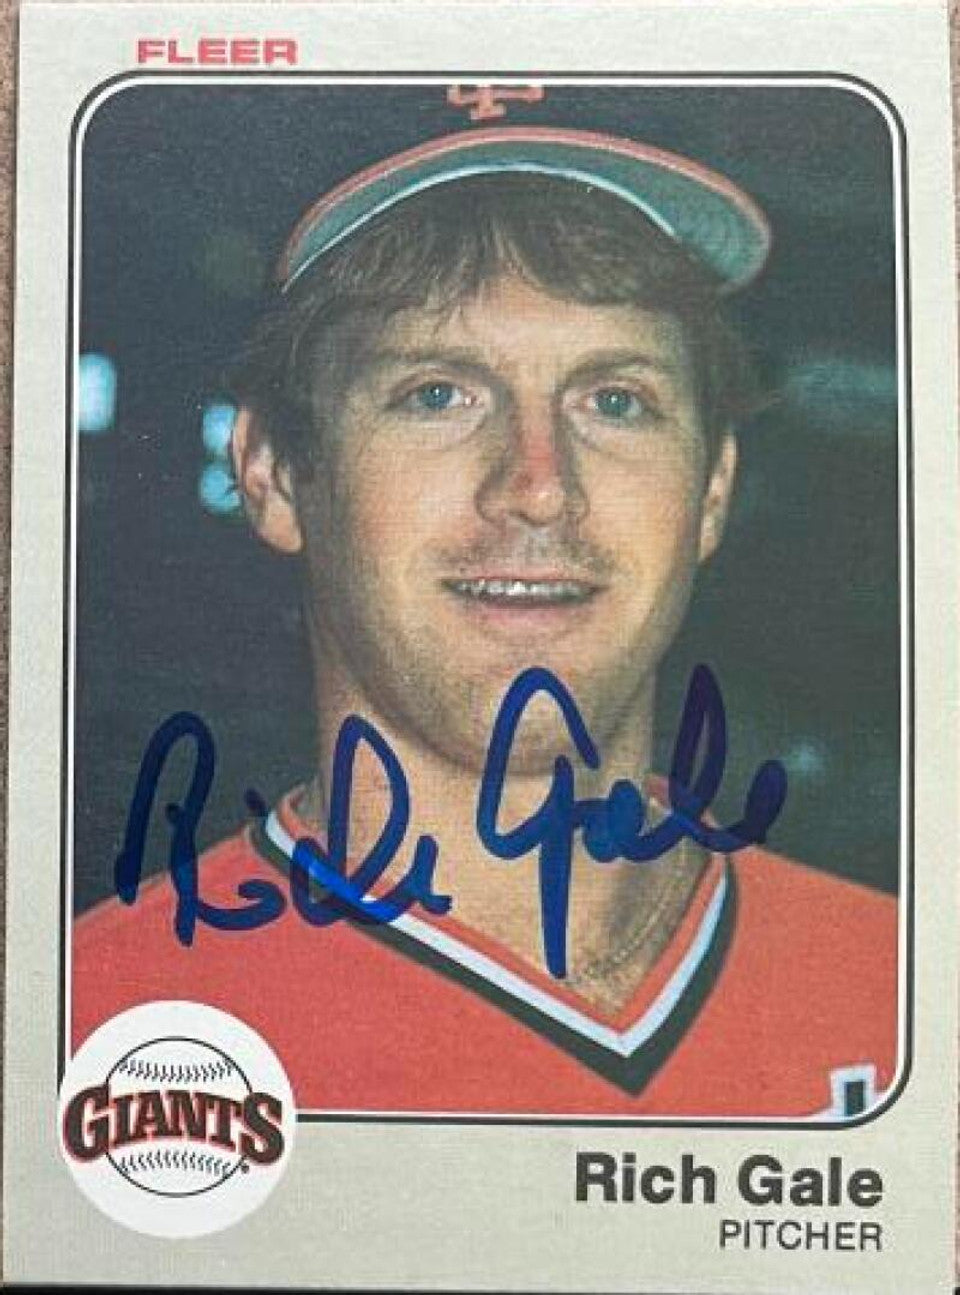 リッチ・ゲイル直筆サイン入り 1983 フリーア ベースボールカード - サンフランシスコ ジャイアンツ